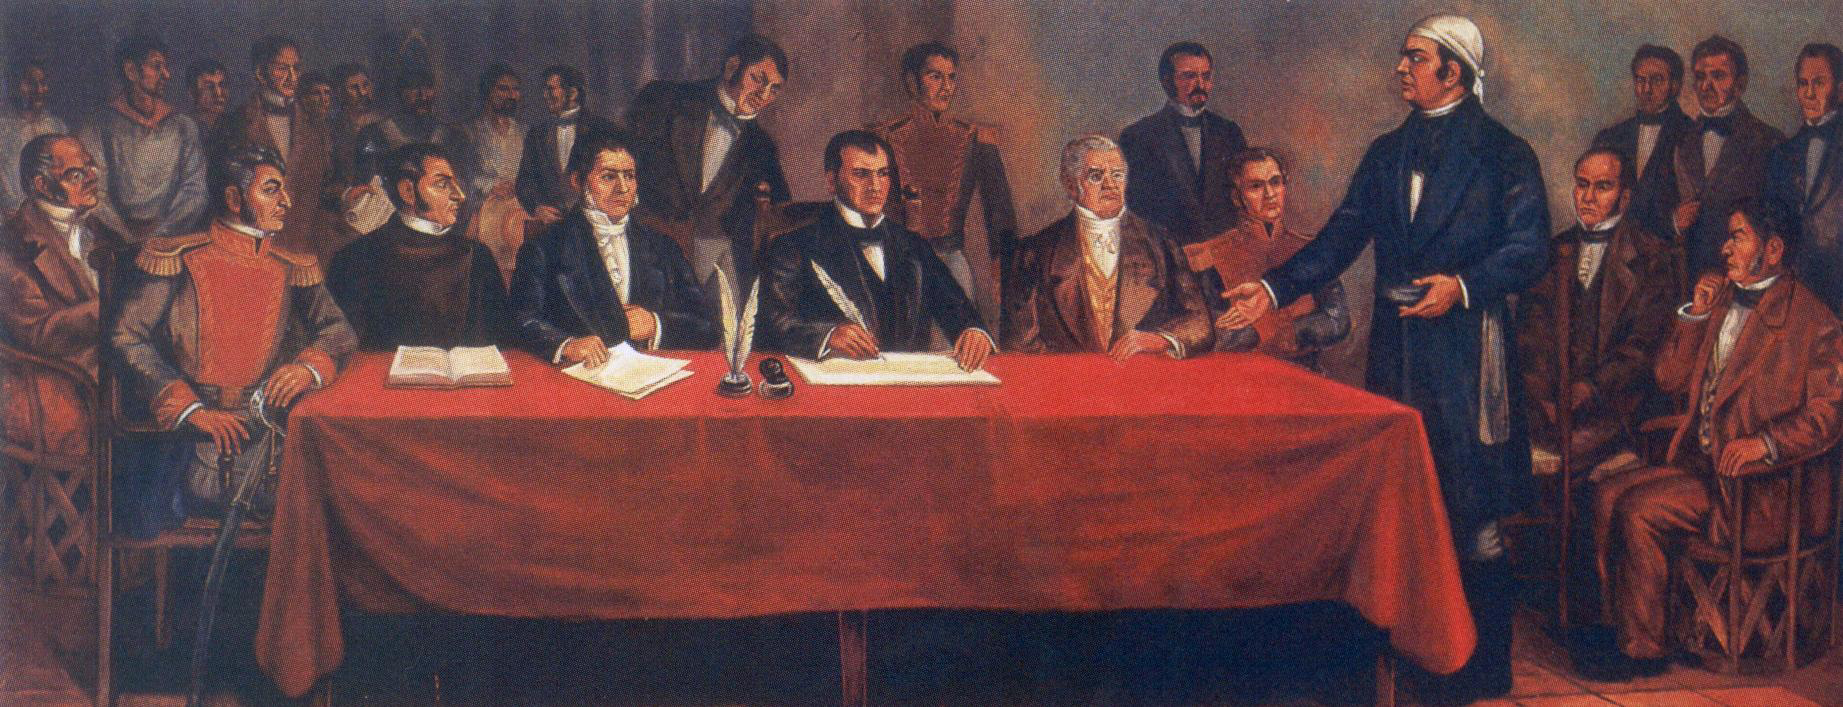 6 de noviembre de 1813 José María Morelos declara oficialmente la independencia de la América Septentrional